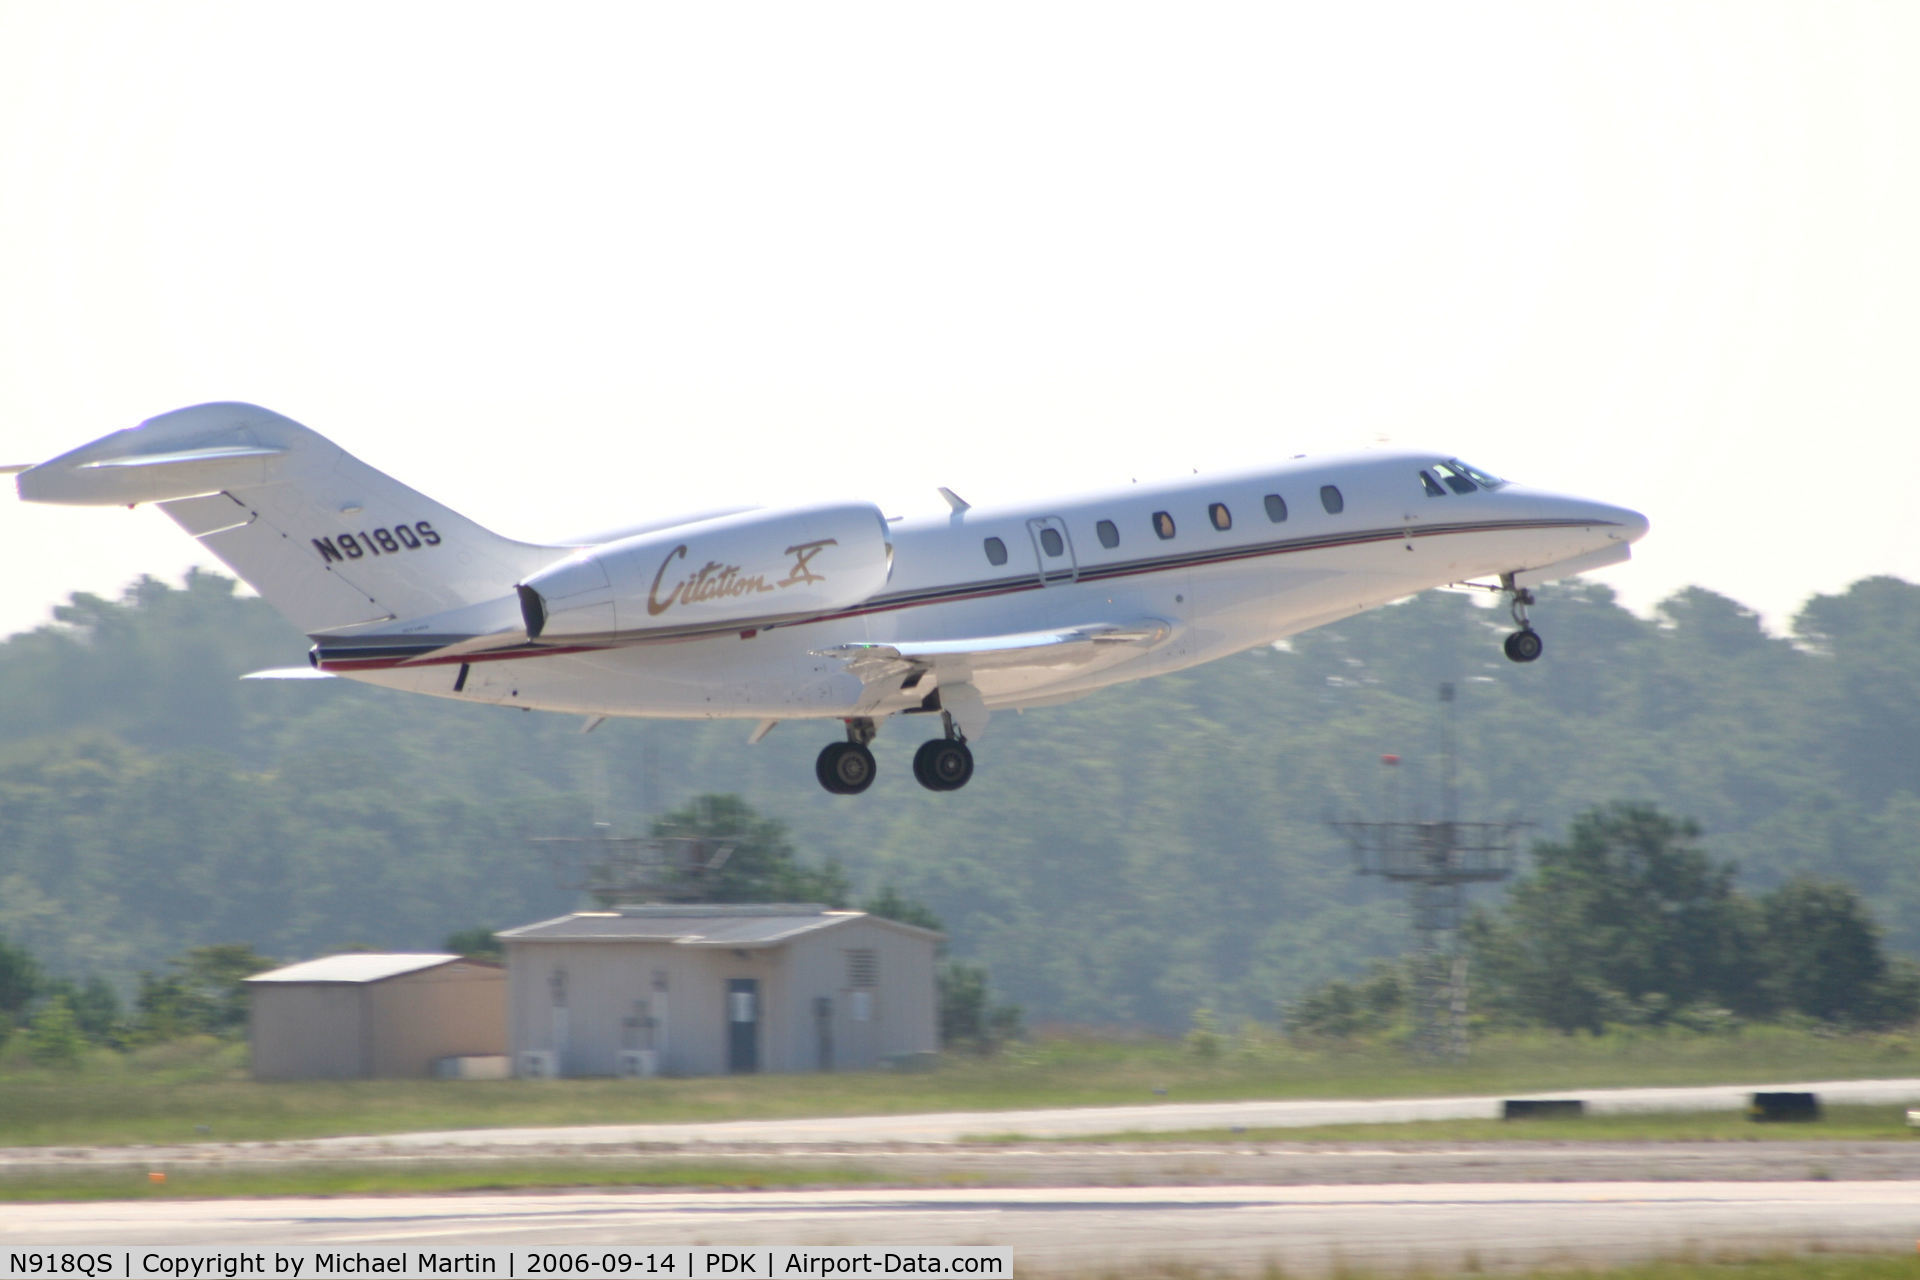 N918QS, 2003 Cessna 750 Citation X Citation X C/N 750-0223, Departing Runway 20L